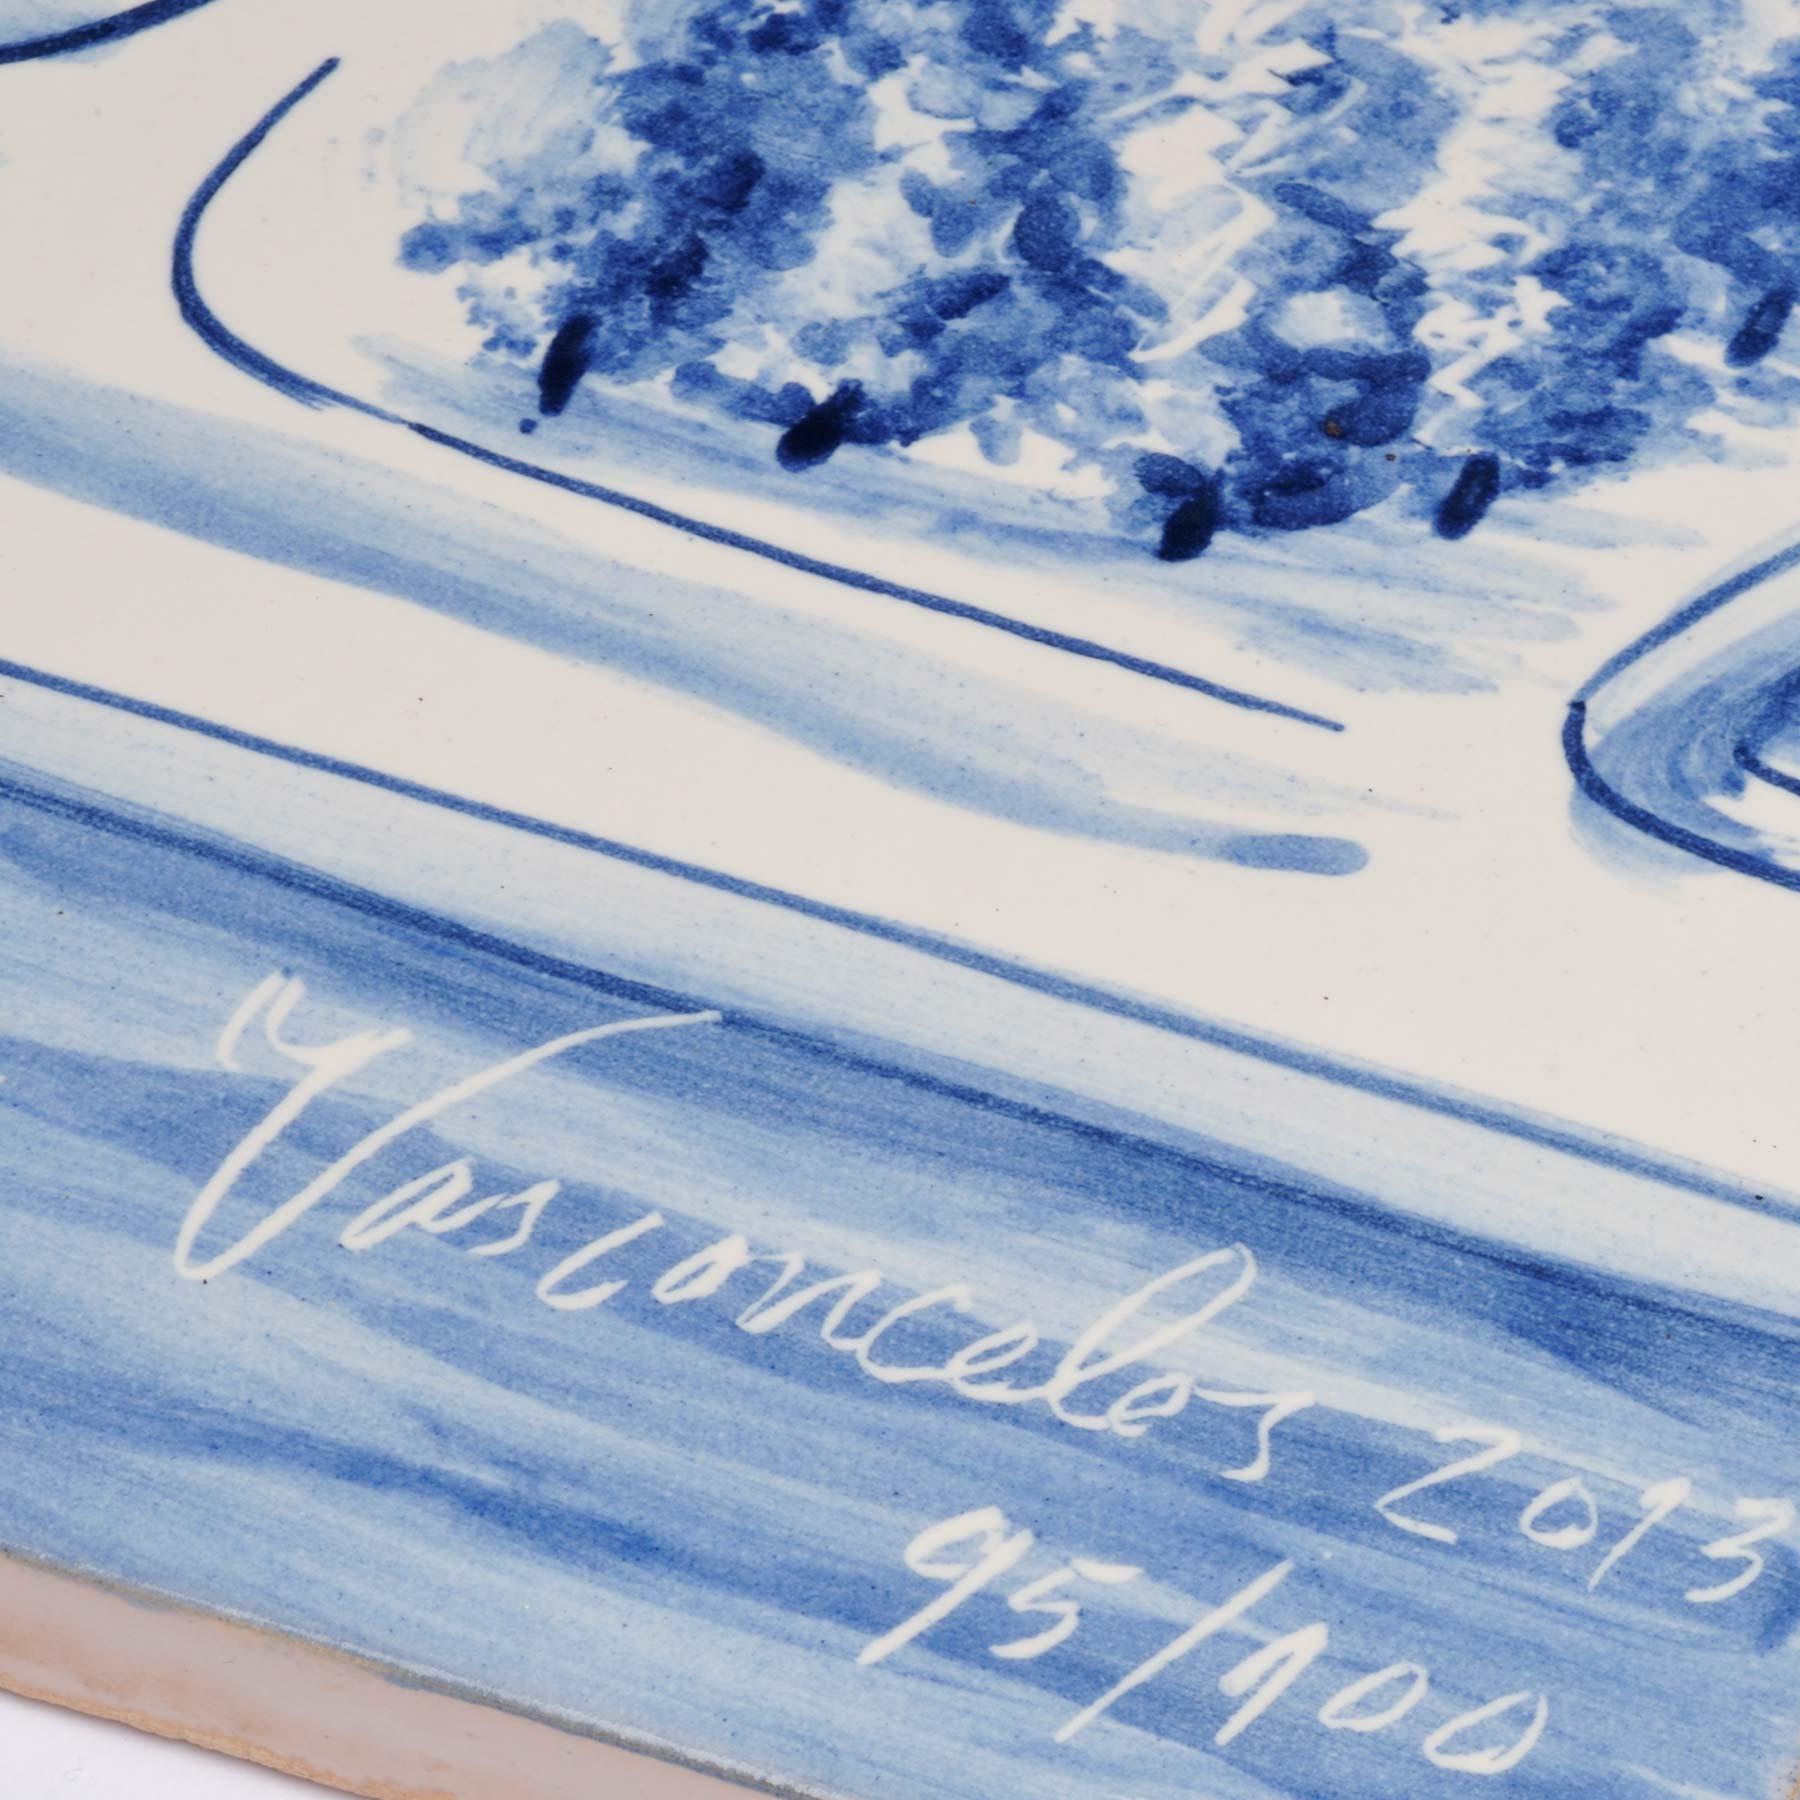 Joana Vasconcelos
Trafaria-Praia
2013
Viúva Lamego Carreaux de céramique étamée peints à la main
42 × 56 cm (16.5 × 22 in), Non encadré
Édition limitée à 100 exemplaires
Signé et numéroté, accompagné d'un certificat d'authenticité.
En parfait état,